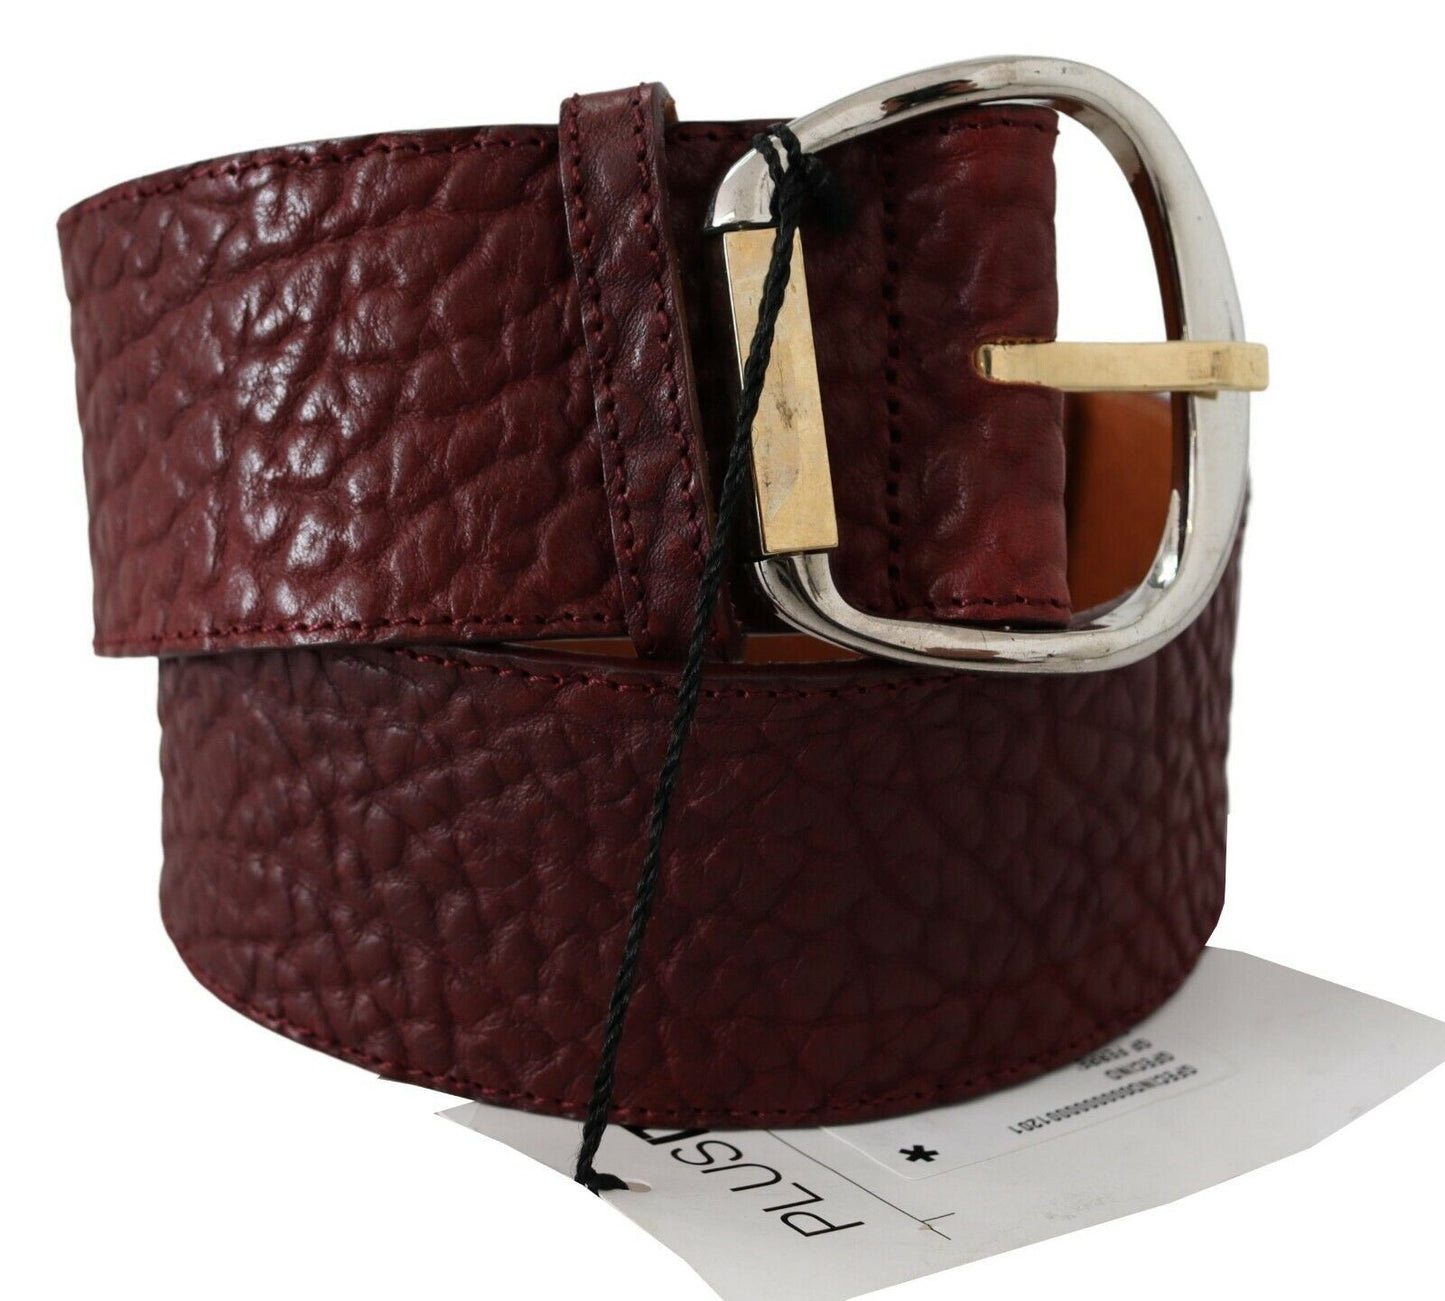 GF Ferre Elegant Brown Leather Fashion Belt